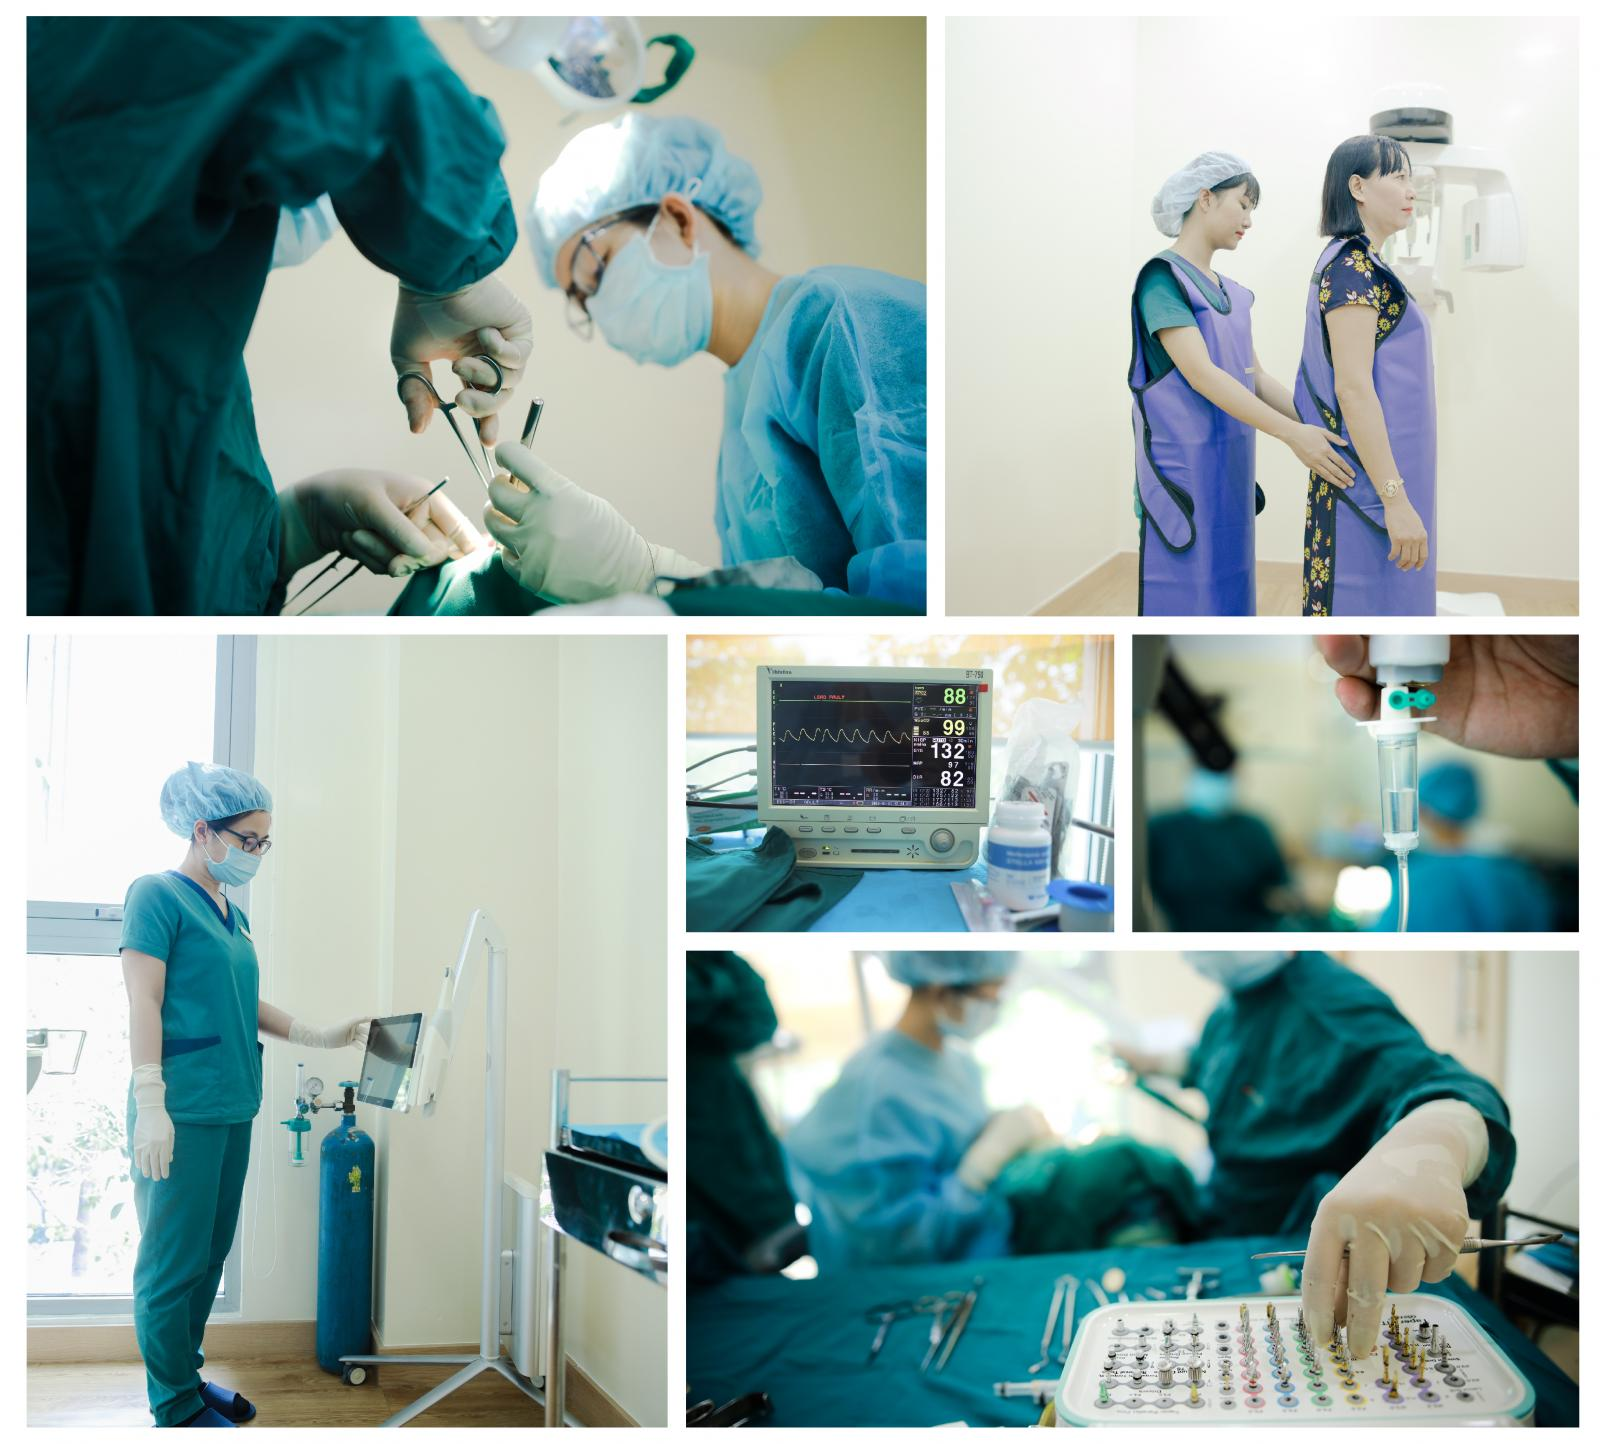 Nha khoa Dr. Care - địa chỉ cắm Implant uy tín được khách hàng tin tưởng tại TPHCM